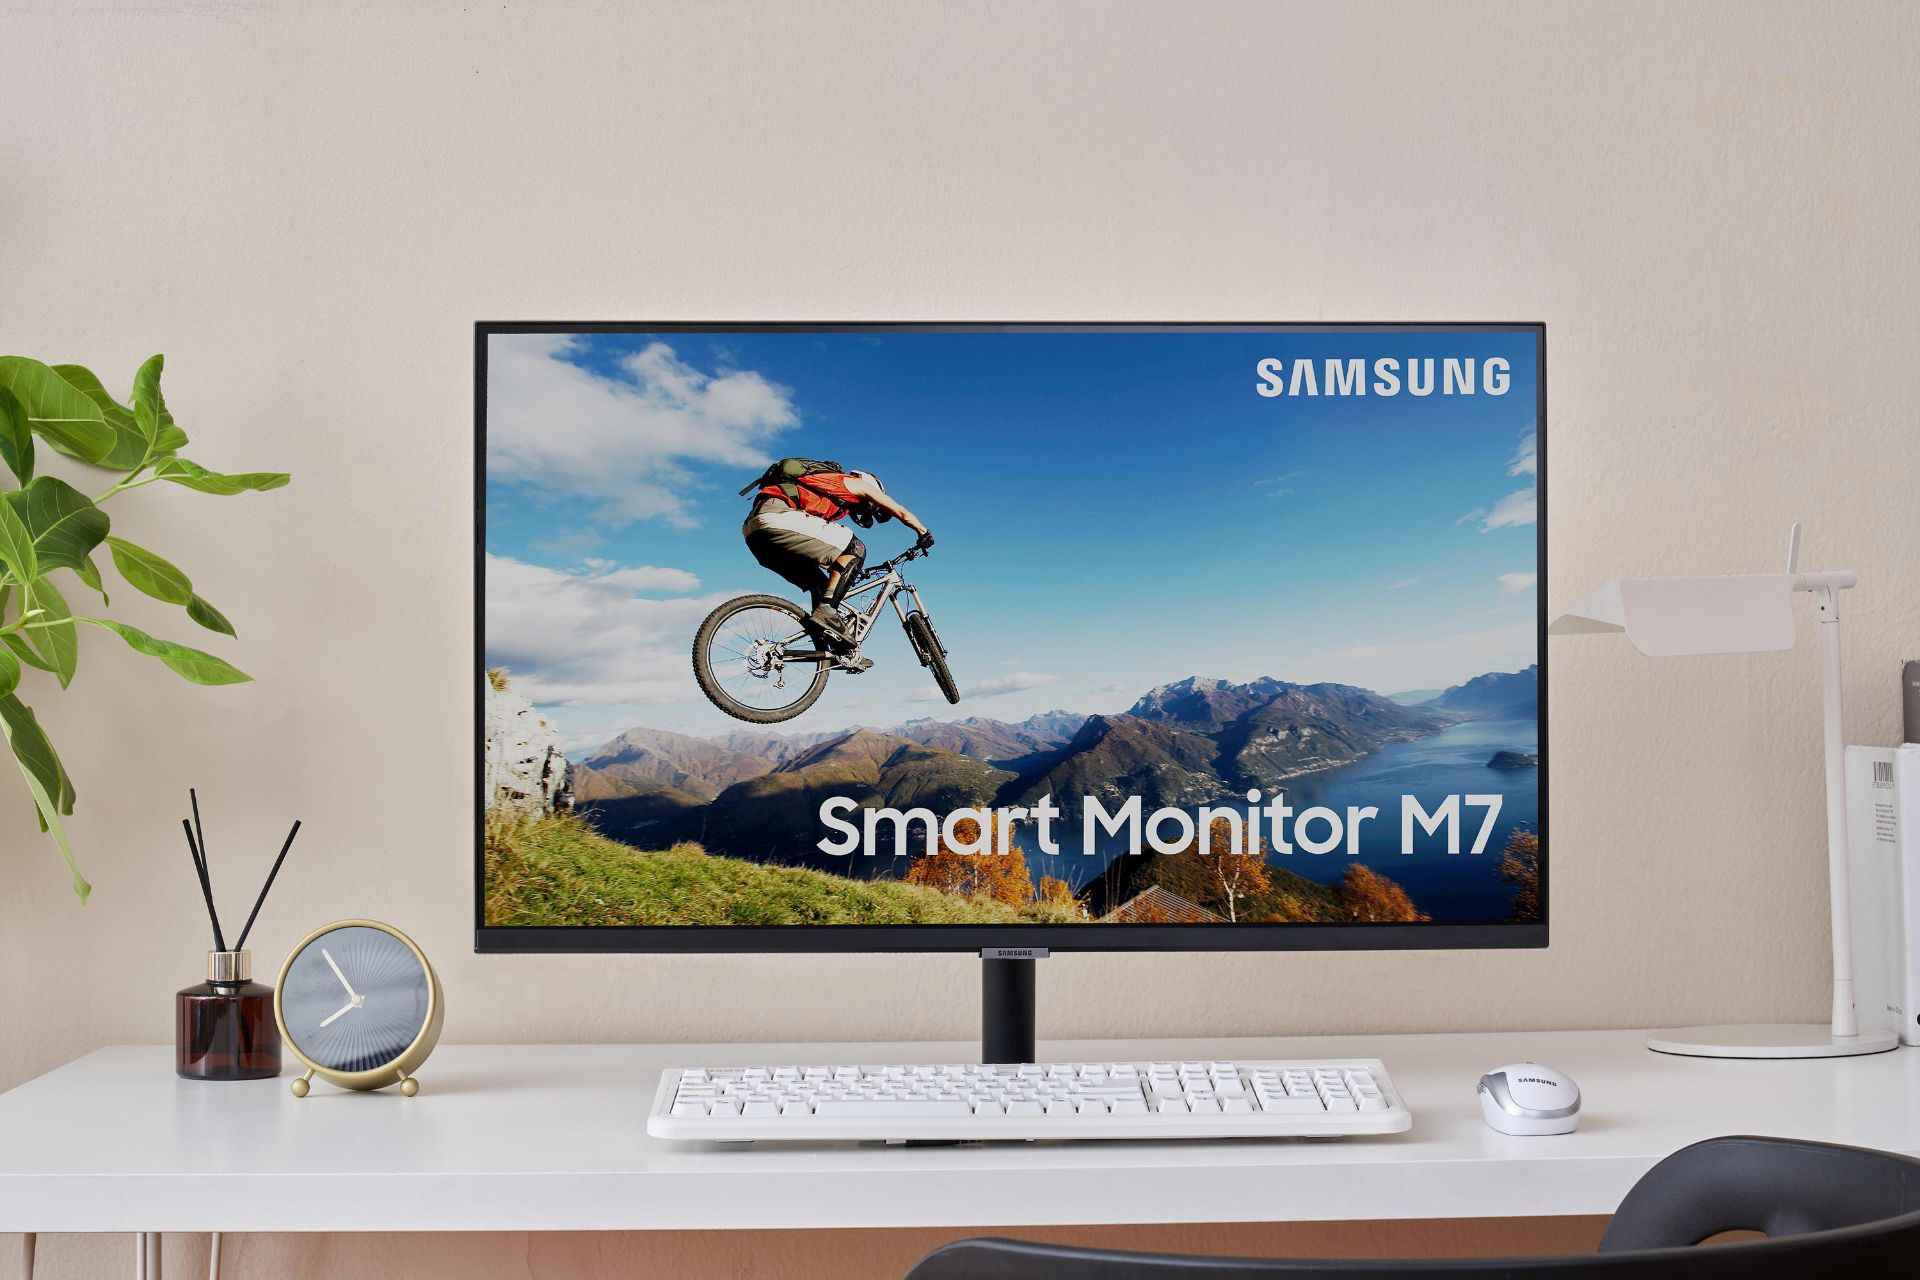 نمای جلو سامسونگ اسمارت مانیتور / Smart Monitor دوچرخه کوهستانی آسمان آبی کیبورد سفید اتاق